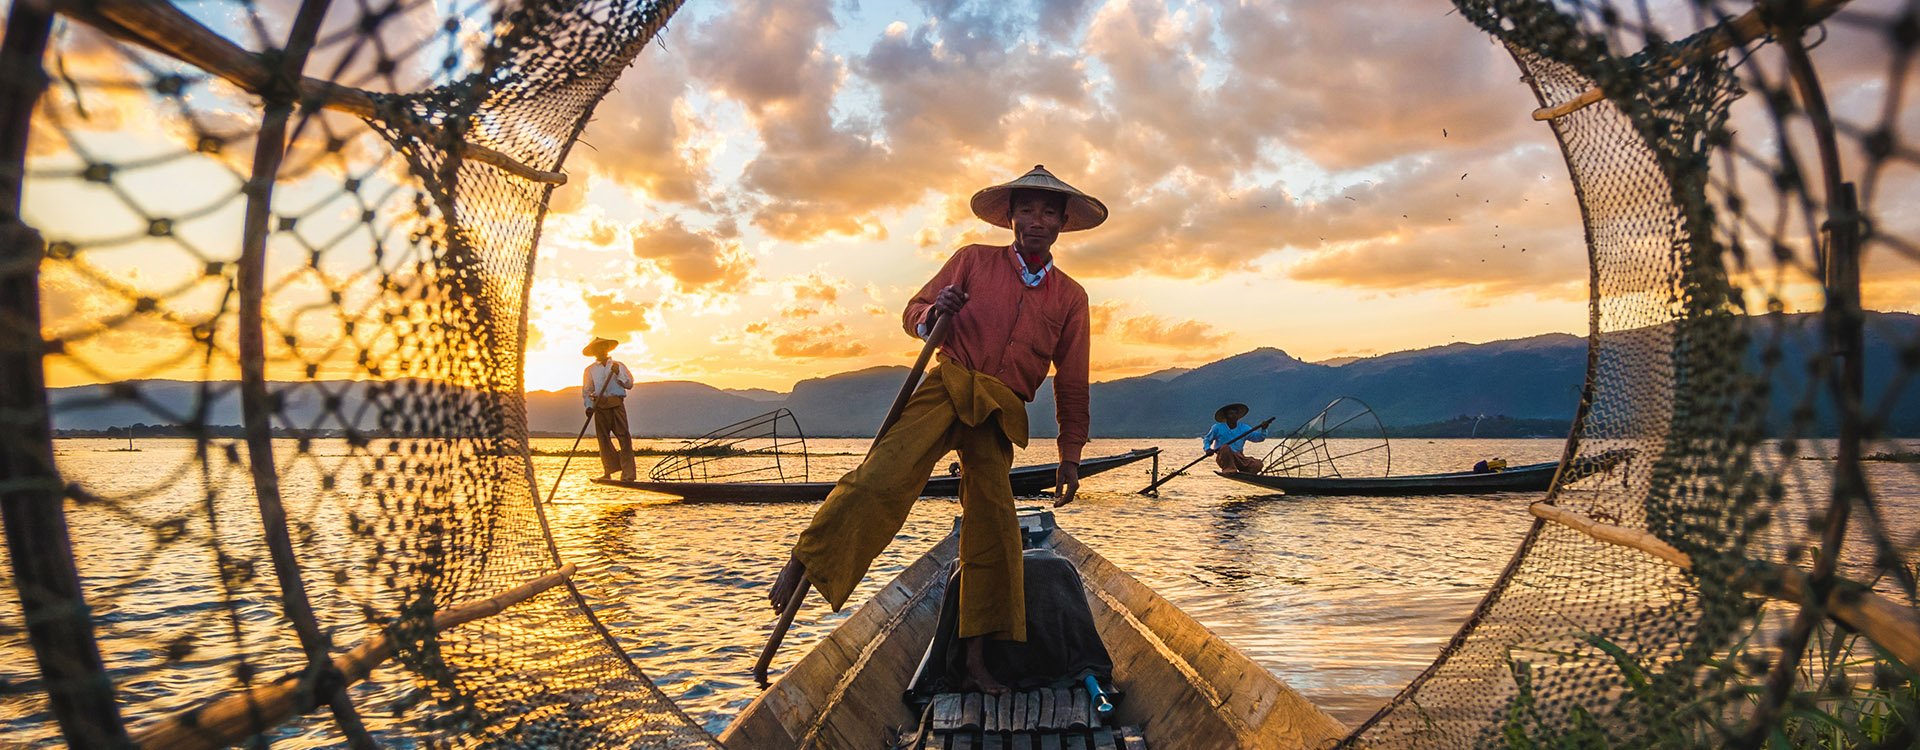 Inle Lake Intha fishermen at sunset in Myanmar (Burma)